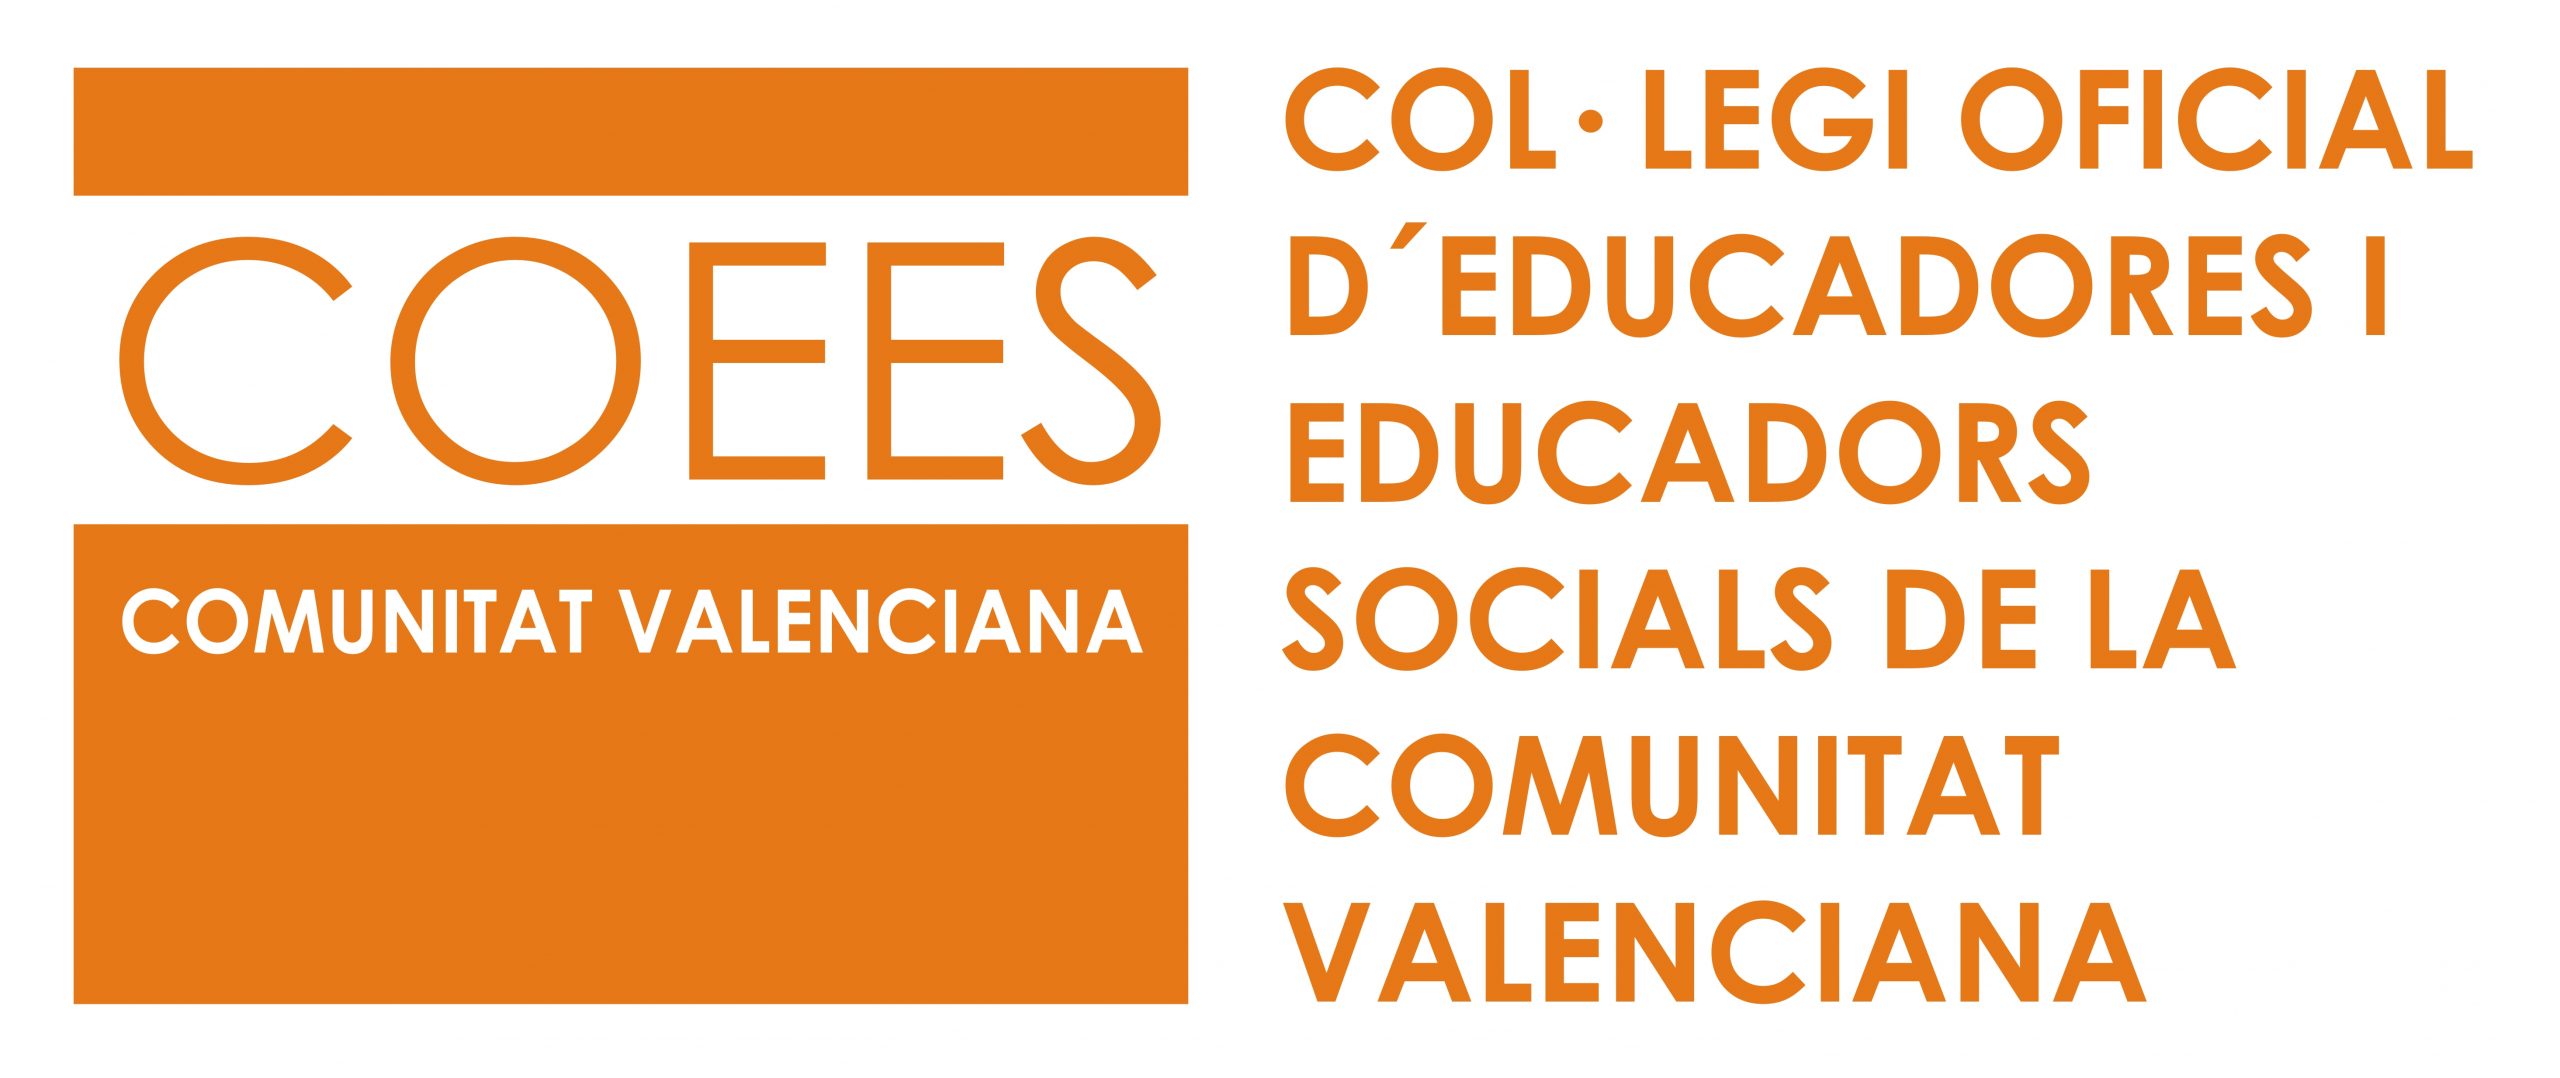 Col·legi Oficial d'Educadores i Educadors Socials de la Comunitat Valenciana